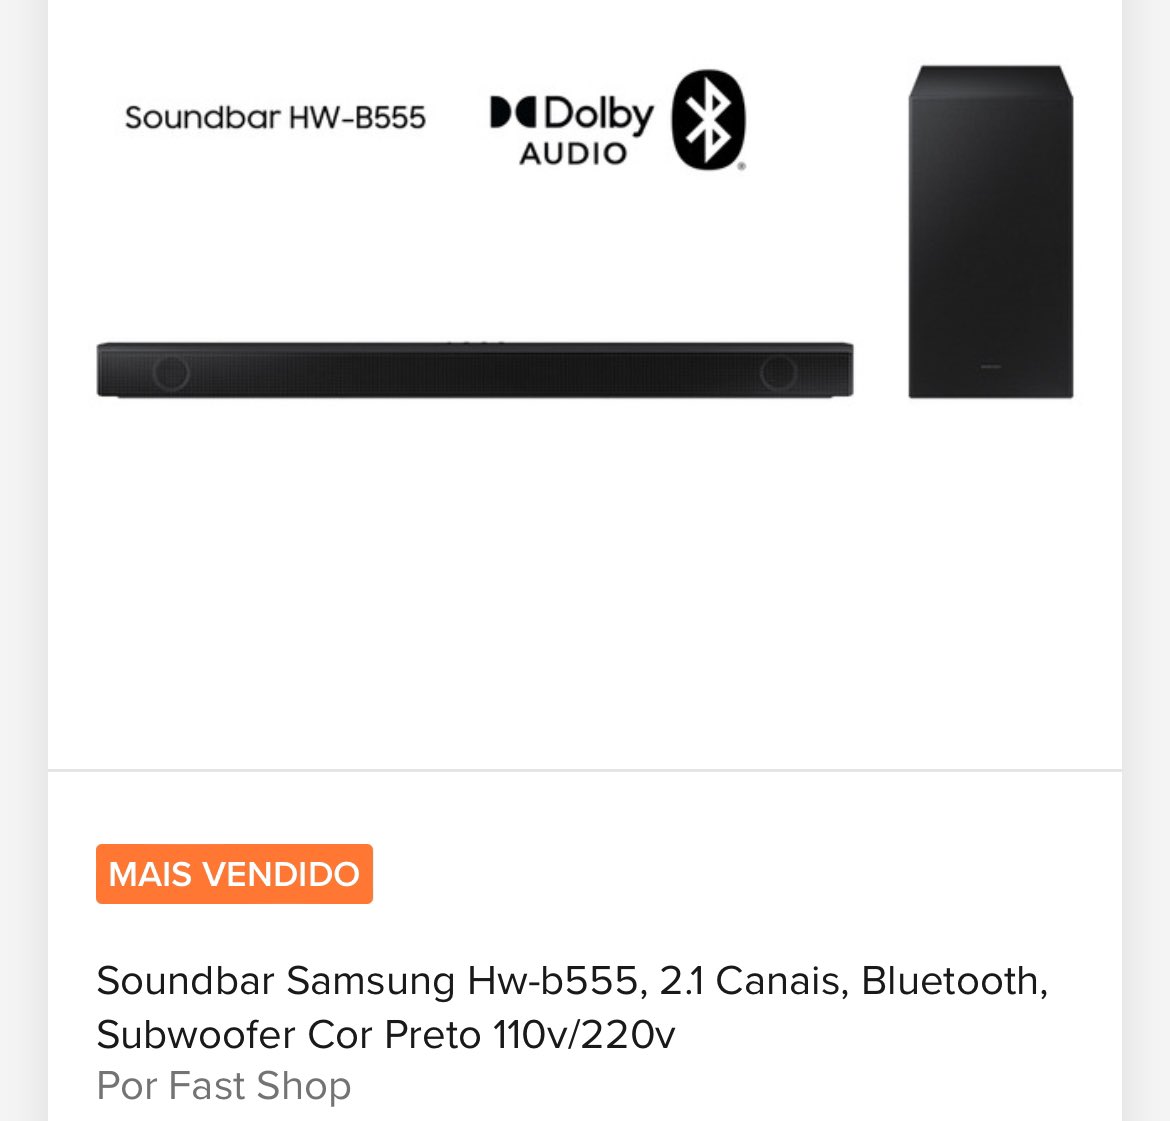 👉🏻 [#MercadoLivre] Soundbar Samsung Hw-b555, 2.1 Canais, Bluetooth, Subwoofer Cor Preto 110V/220V

💰 De: R$1.423,66
💰 Preço da oferta: R$929,05 (Use o cupom: SOHOJE20)

💻 mercadolivre.com/sec/19RGqER